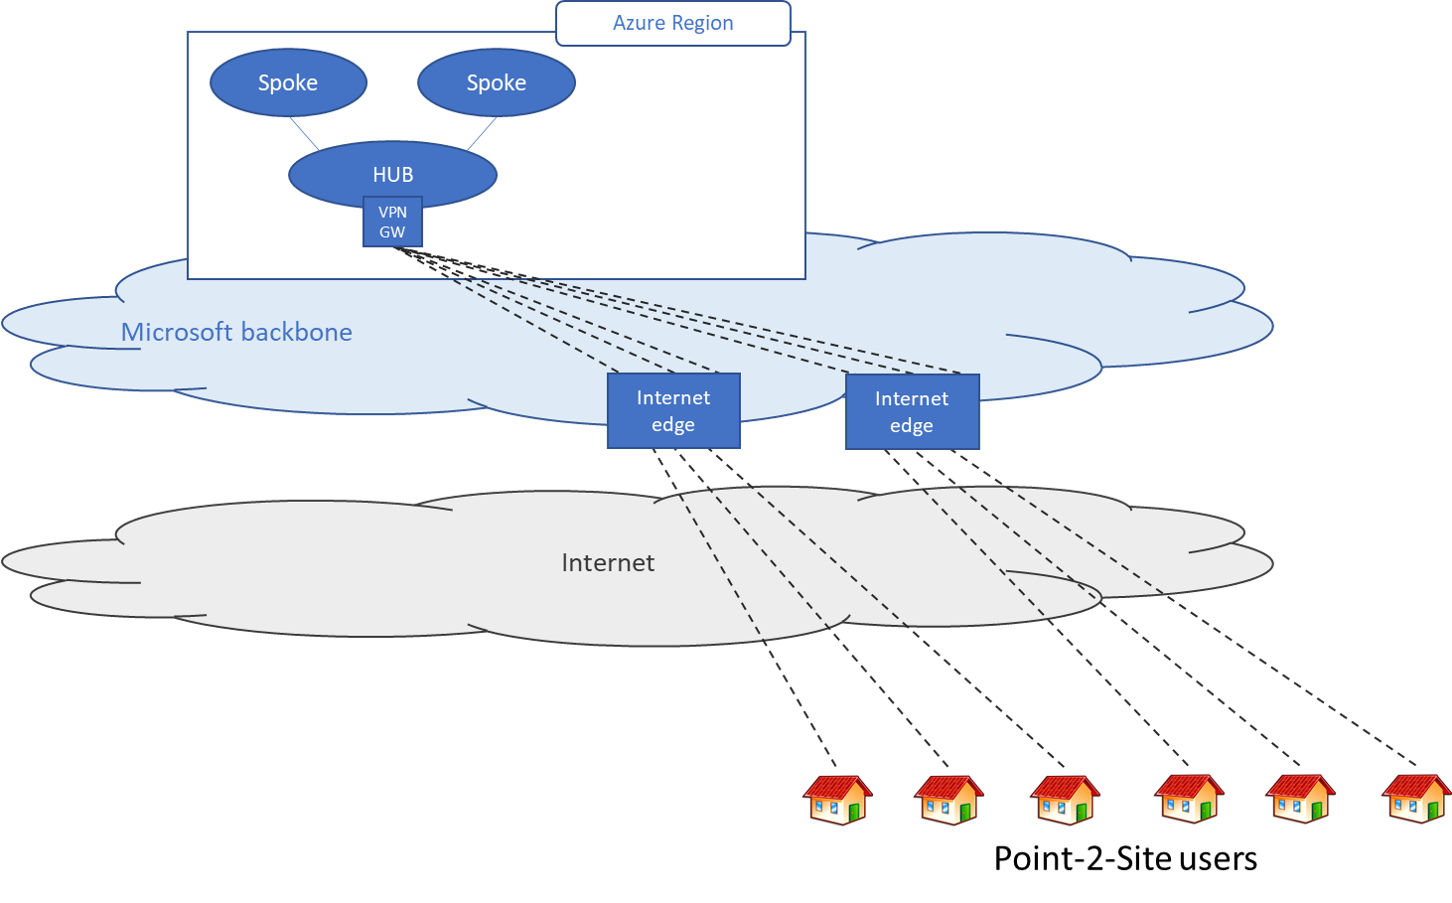 Diagram, amely egy pont–hely forgatókönyvet mutat be azoknak a felhasználóknak, amelyeknek csak az Azure-ban kell hozzáférni az erőforrásokhoz.